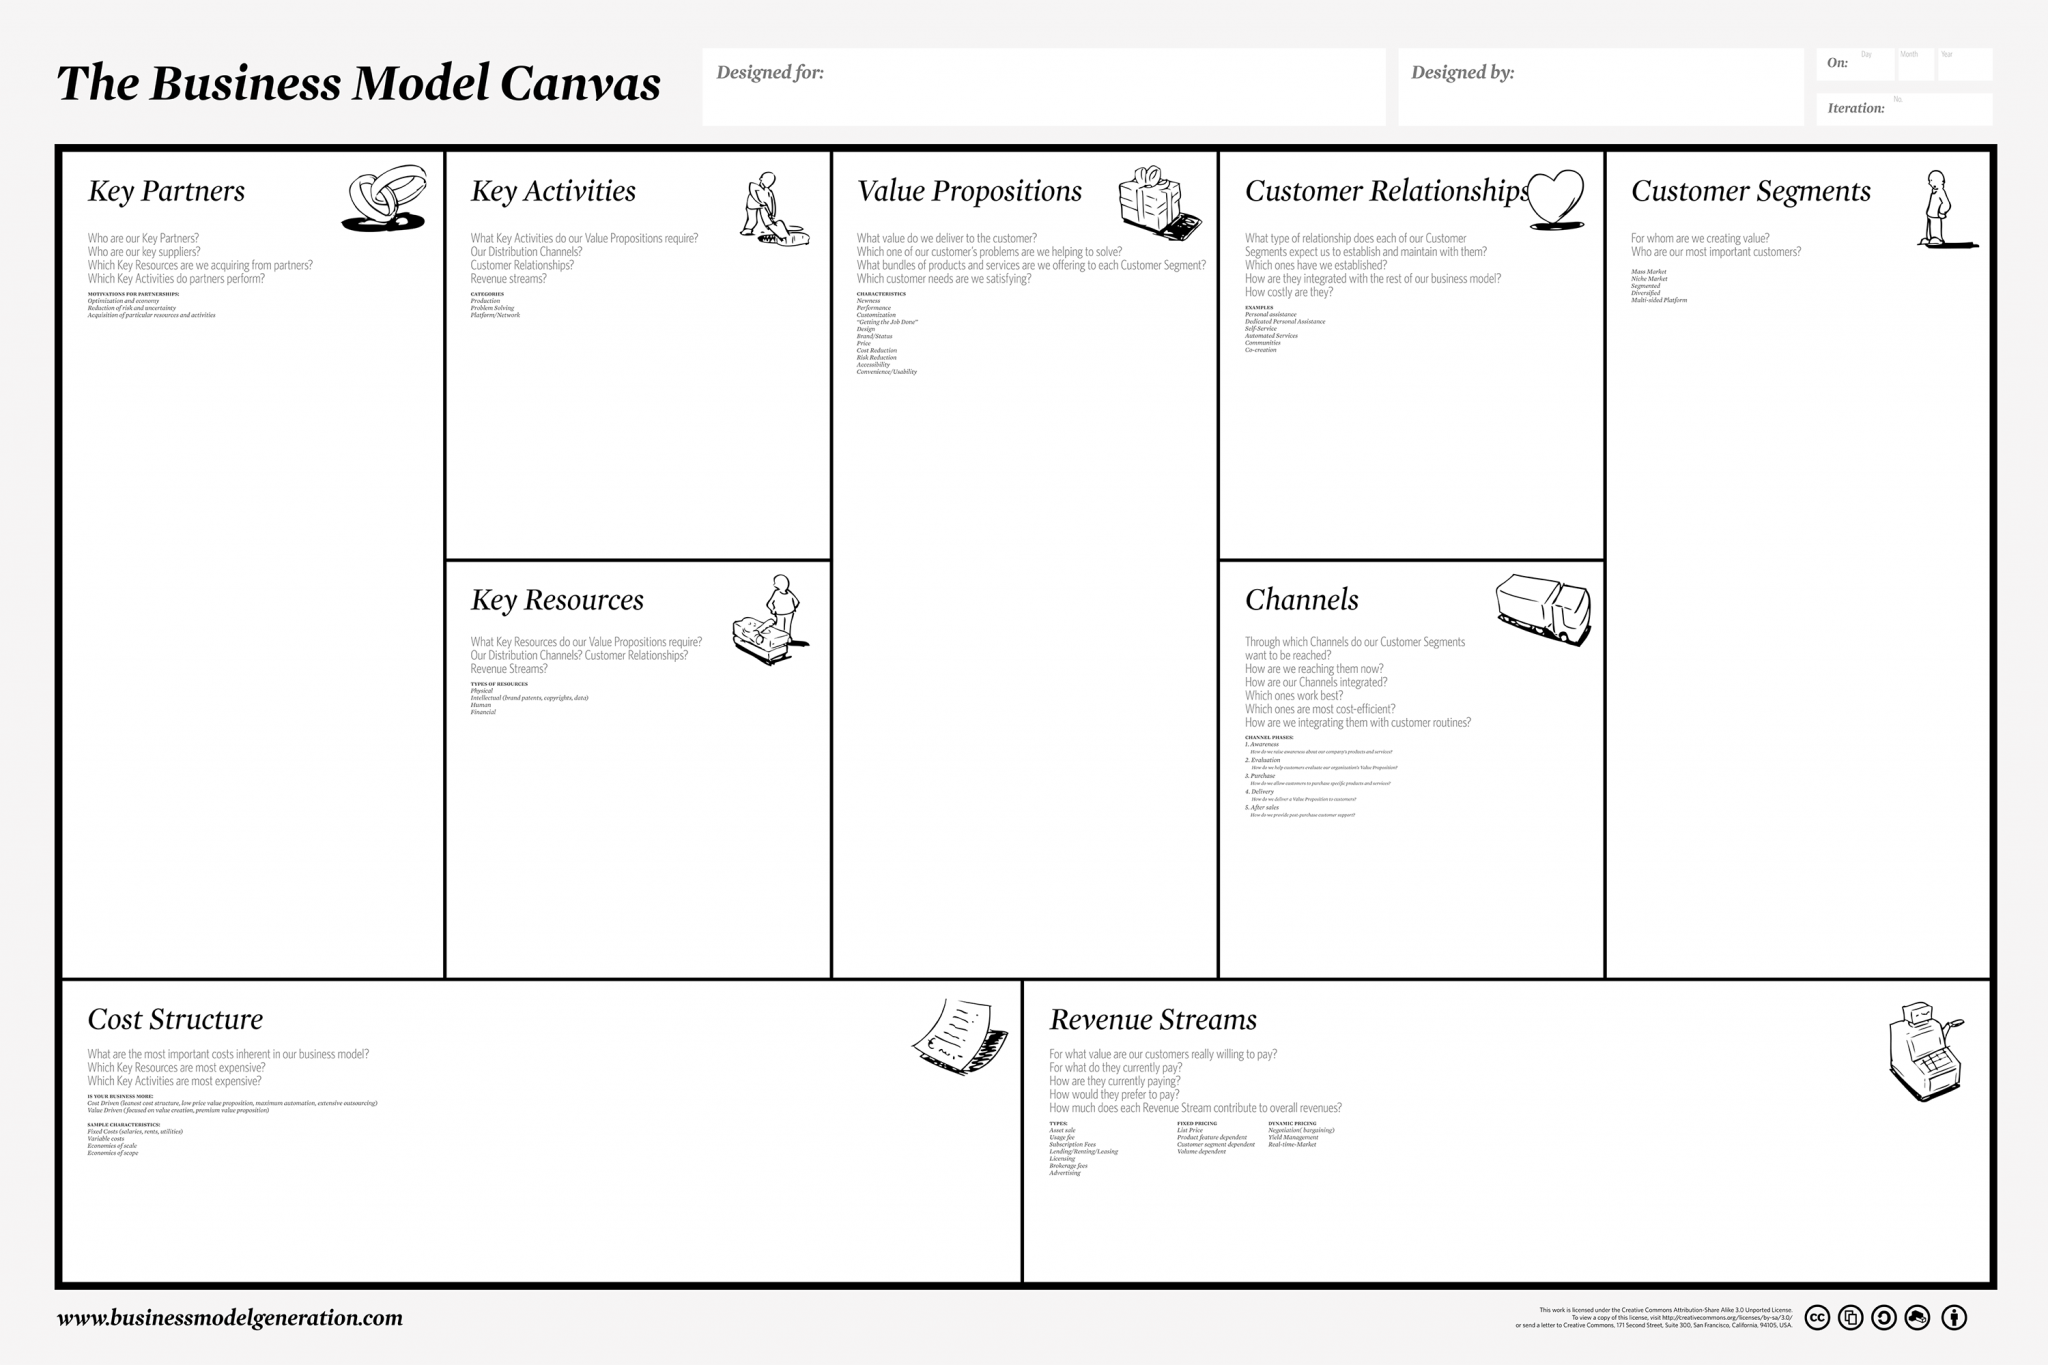 Lean Canvas & Business Model Canvas